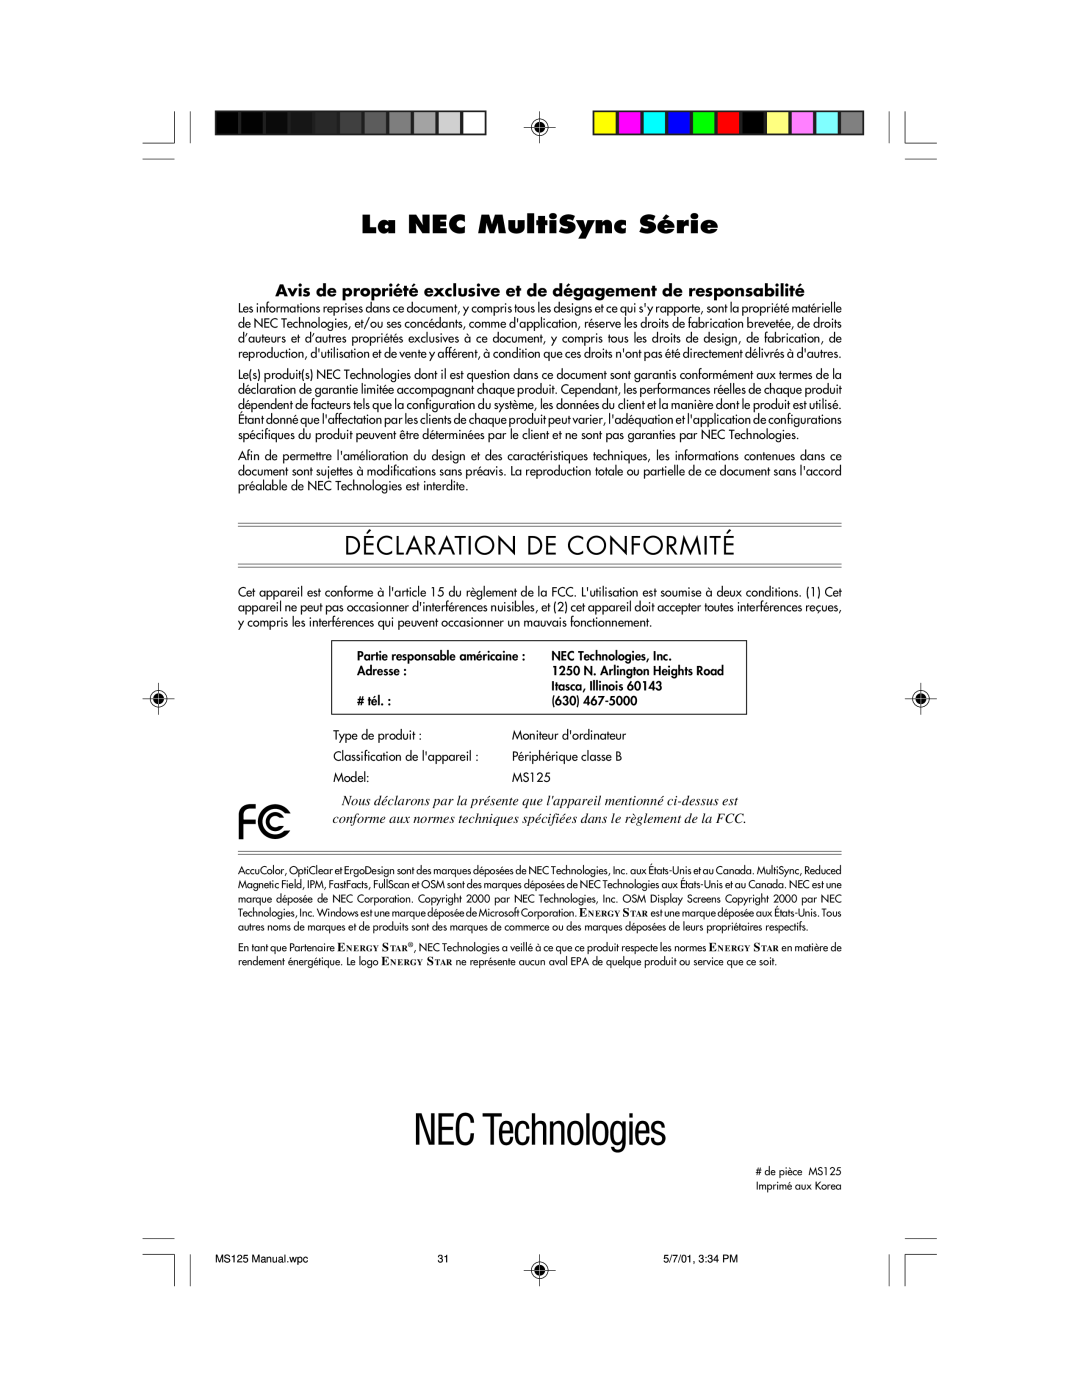 NEC MS125 manual La NEC MultiSync Série, Déclaration De Conformité 